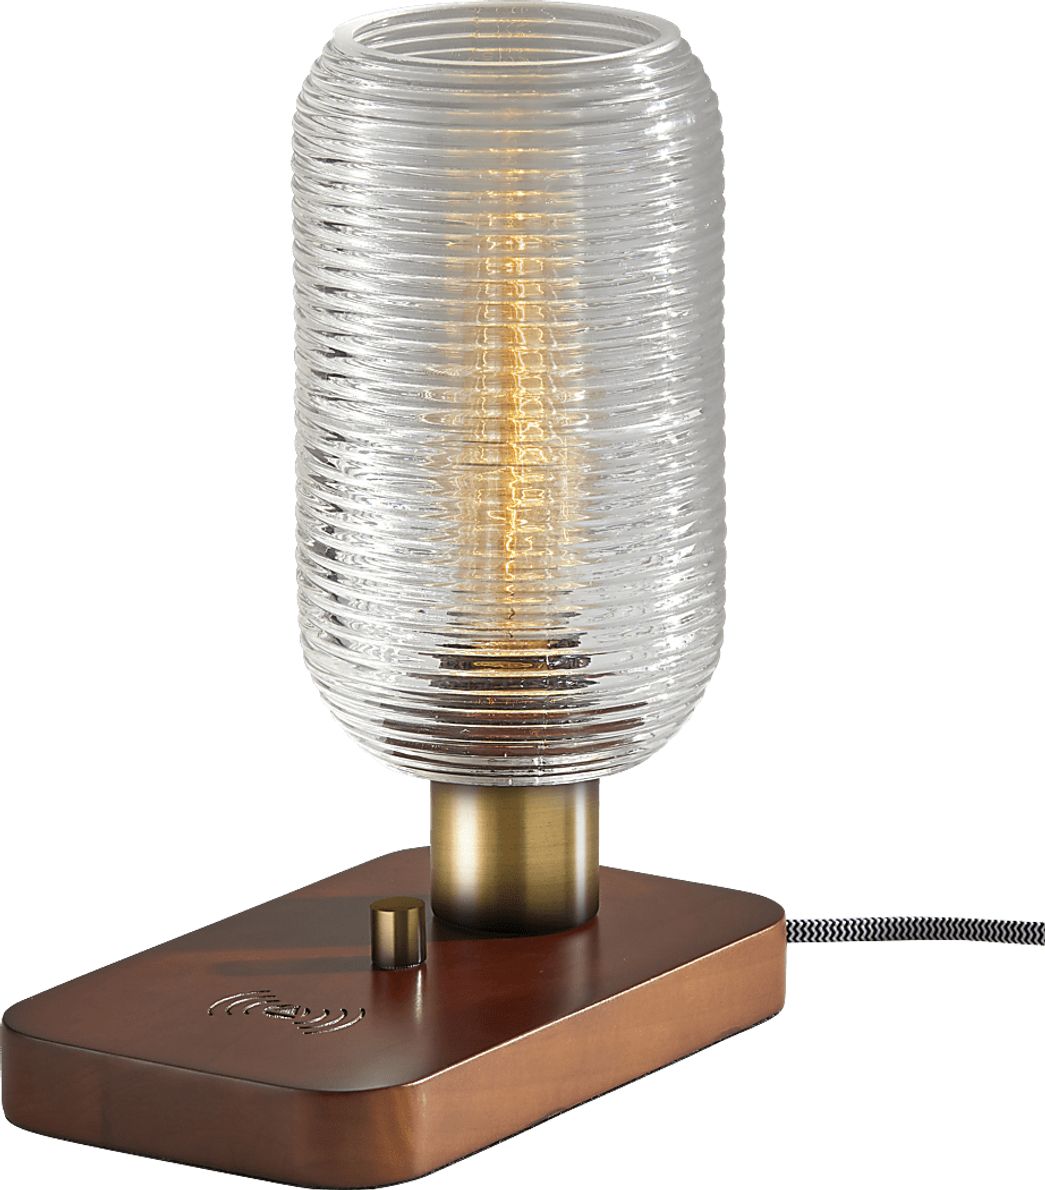 Algard Brass Lamp